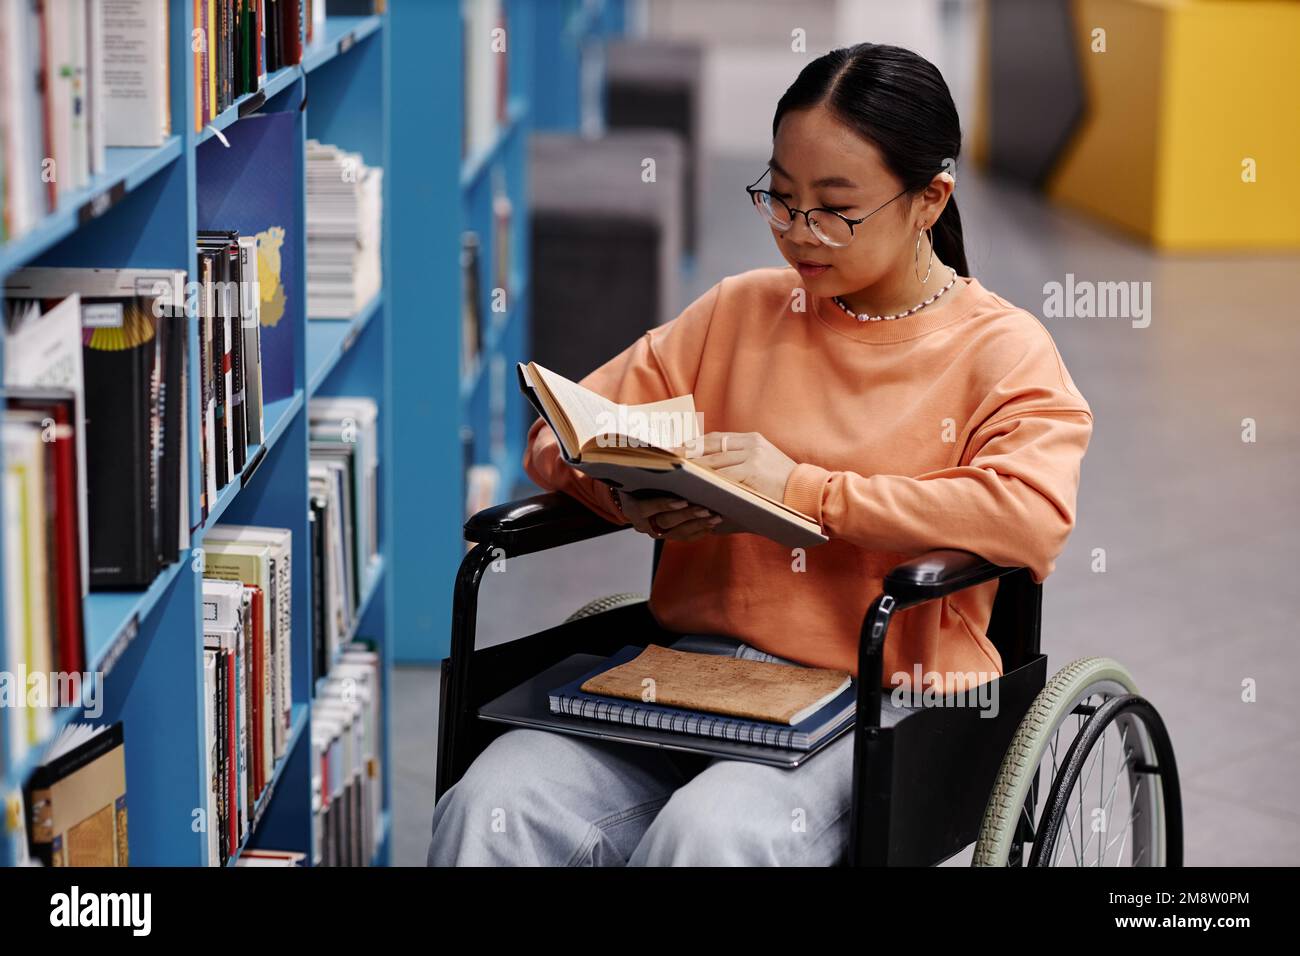 Alto angolo ritratto di ragazza asiatica con disabilità in biblioteca università impostazione lettura libri Foto Stock